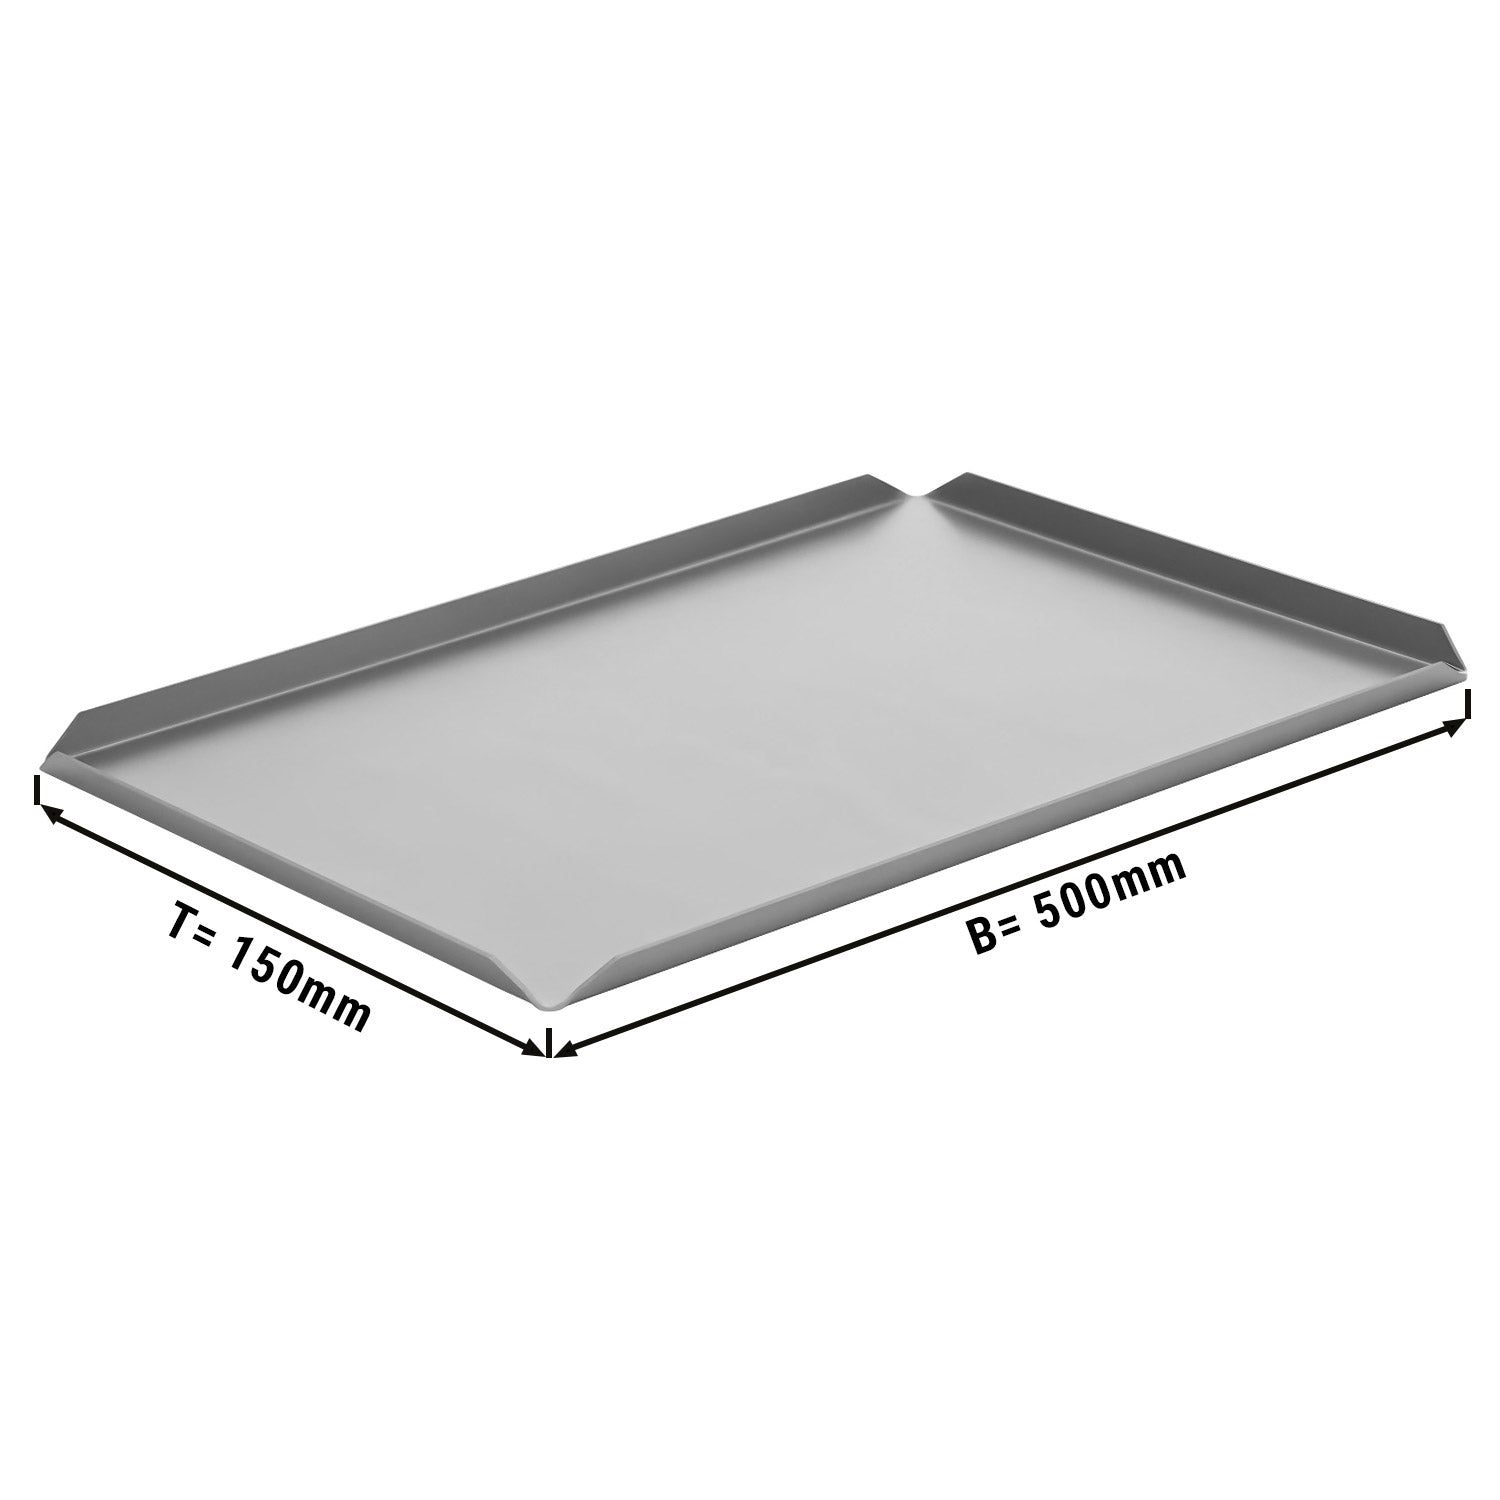 (5 stk.) Konfekture- og præsentationsplade af aluminium - 500 x 150 x 10 mm - aluminium